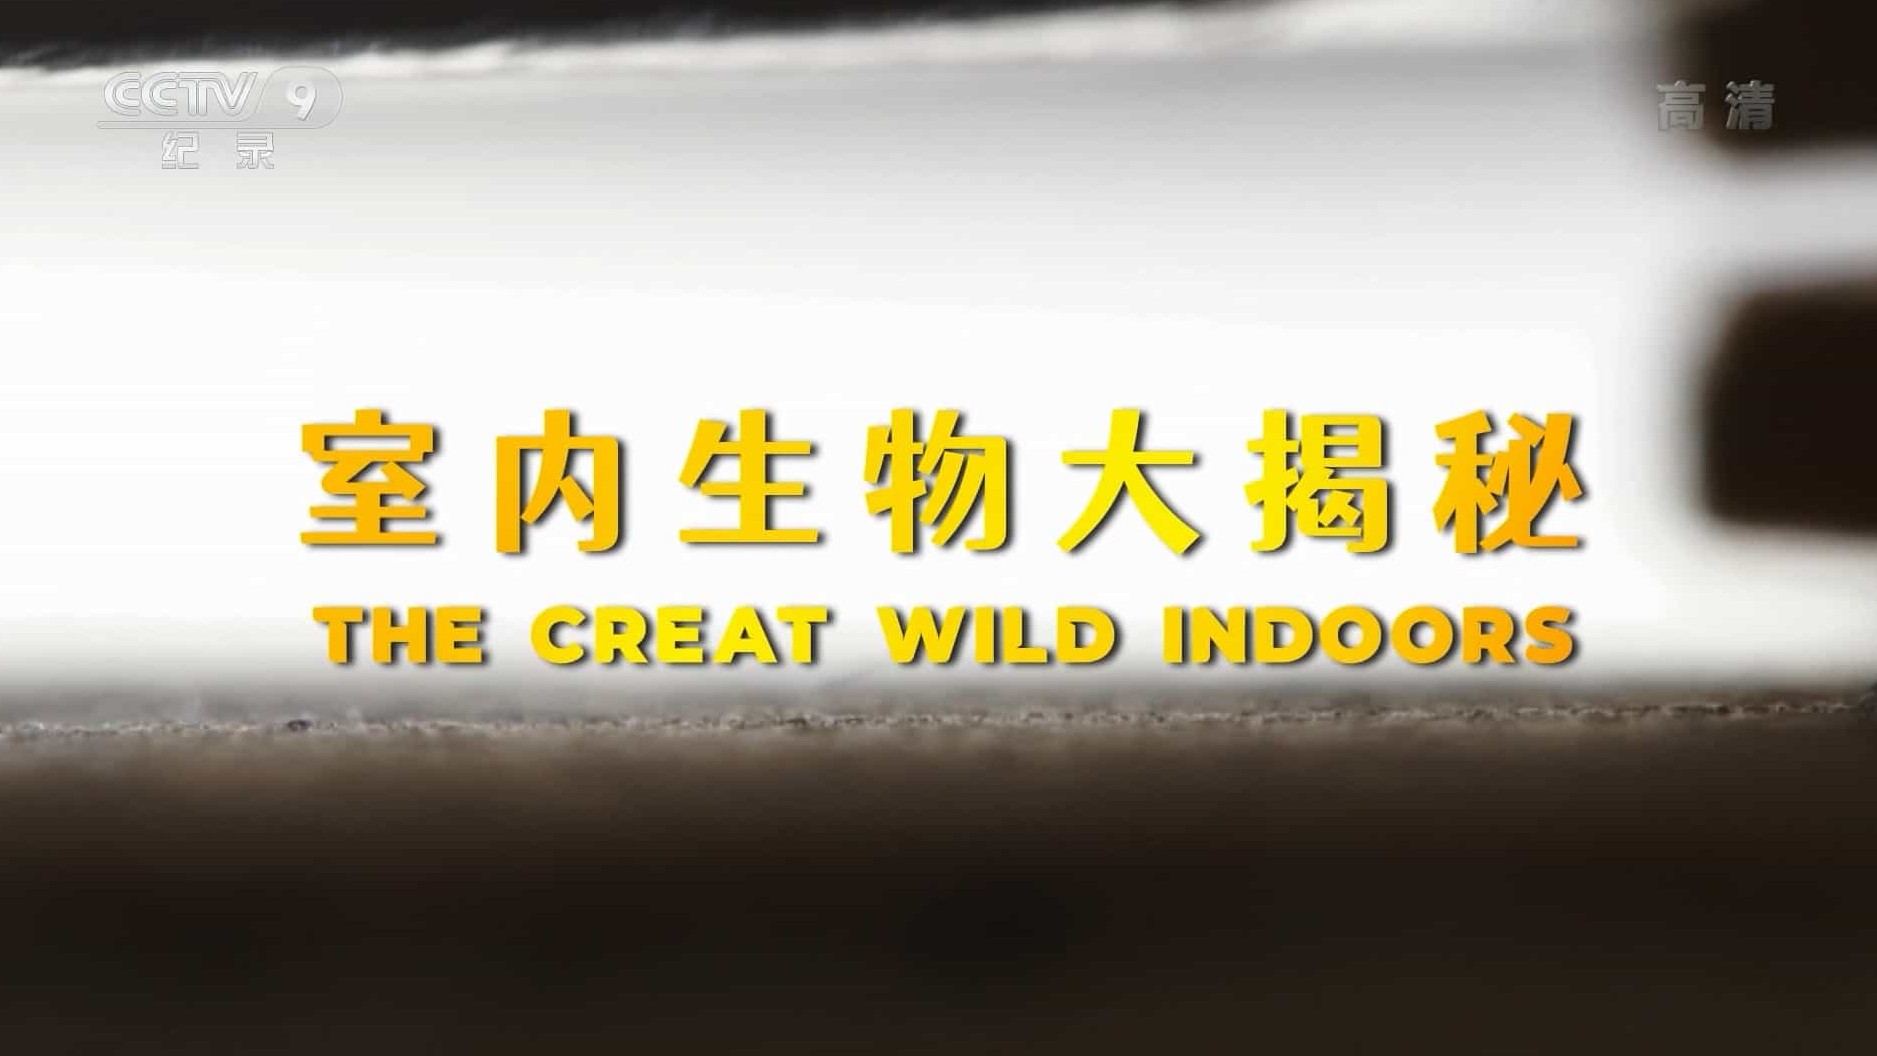 央视纪录片/CBC纪录片《室内生物大揭秘 The Creat Wild Indoors》全1集 国语中字 1080P高清网盘下载